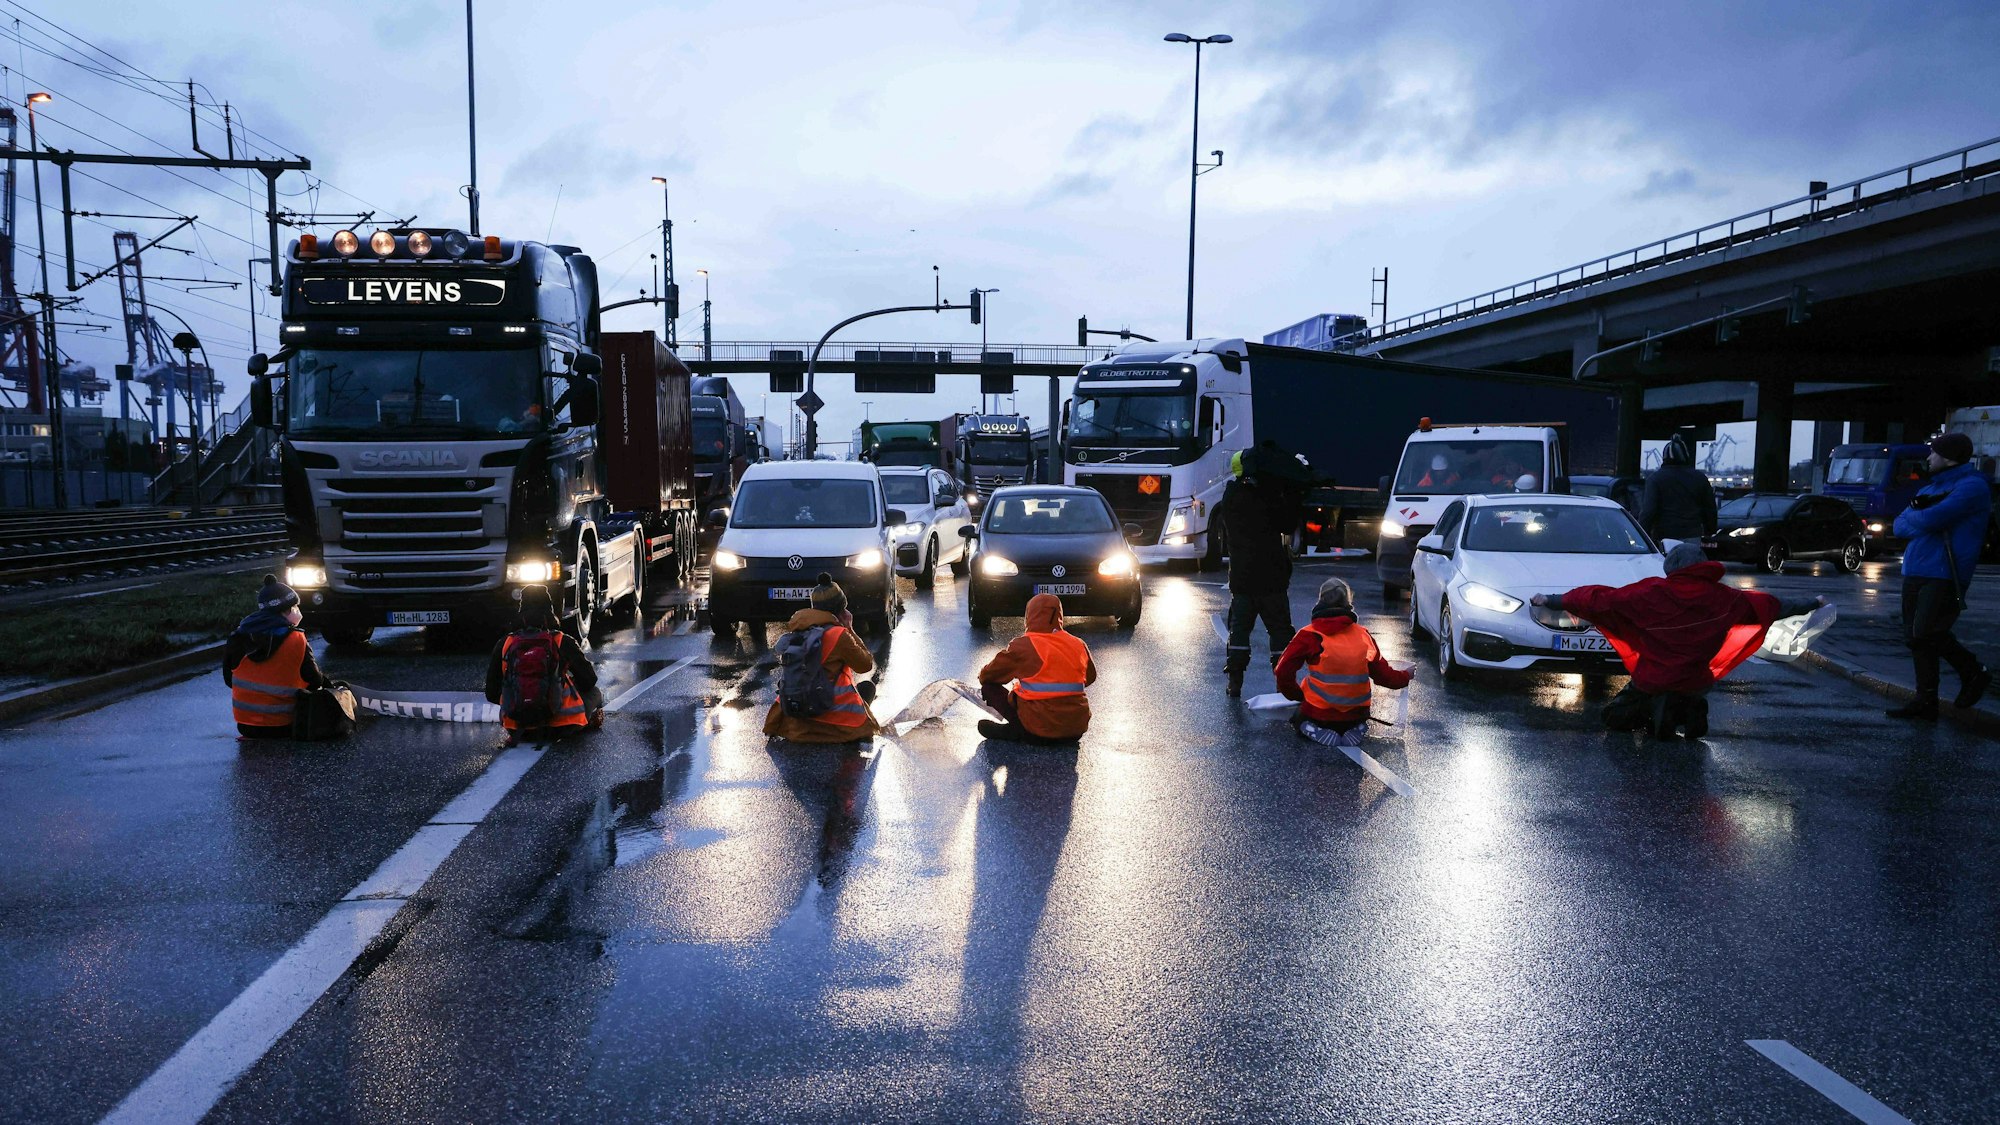 Klimaaktivisten der Aktion „Aufstand der letzten Generation“ blockieren am Morgen eine Kreuzung am Zollamt Waltershof zur Köhlbrandbrücke und zur Autobahn A7. Sie tragen Warnwesten und sitzen auf der Straße. Autos stehen vor ihnen.